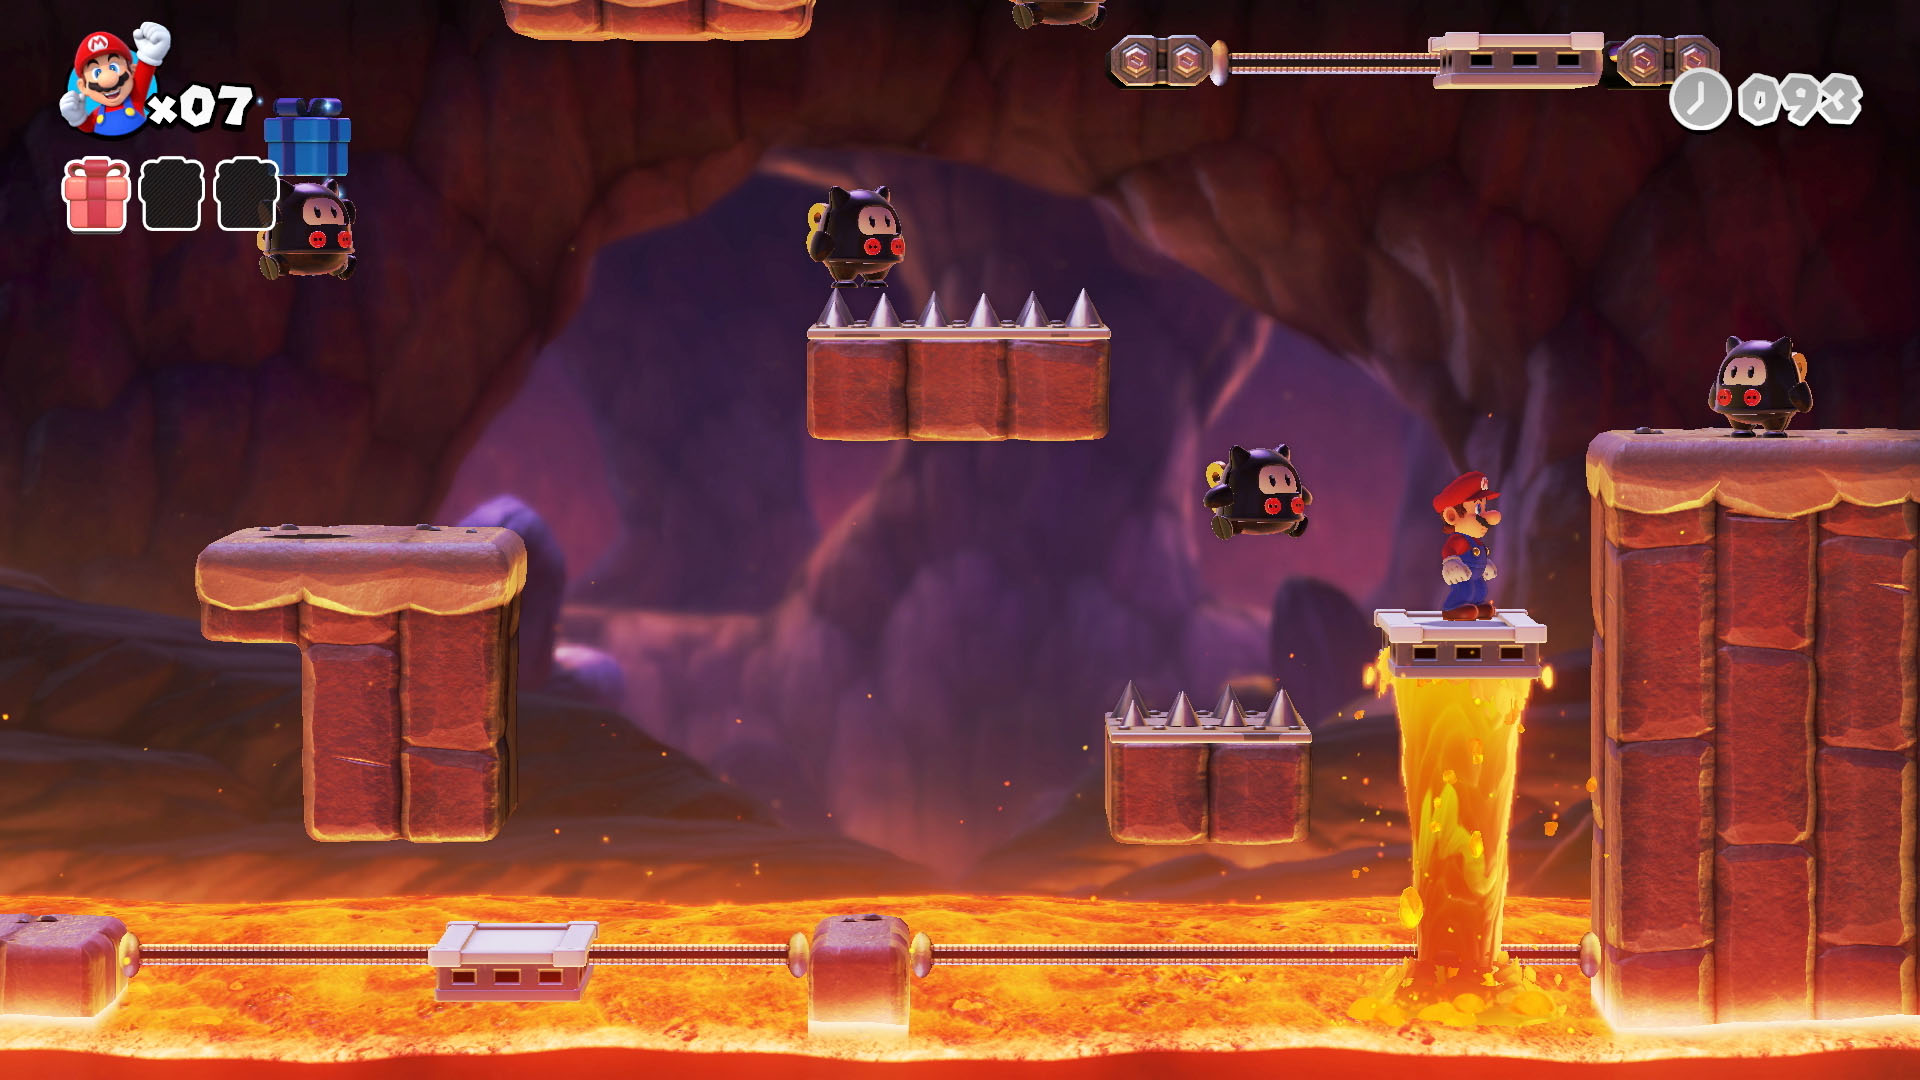 A screenshot from Mario Vs. Donkey Kong